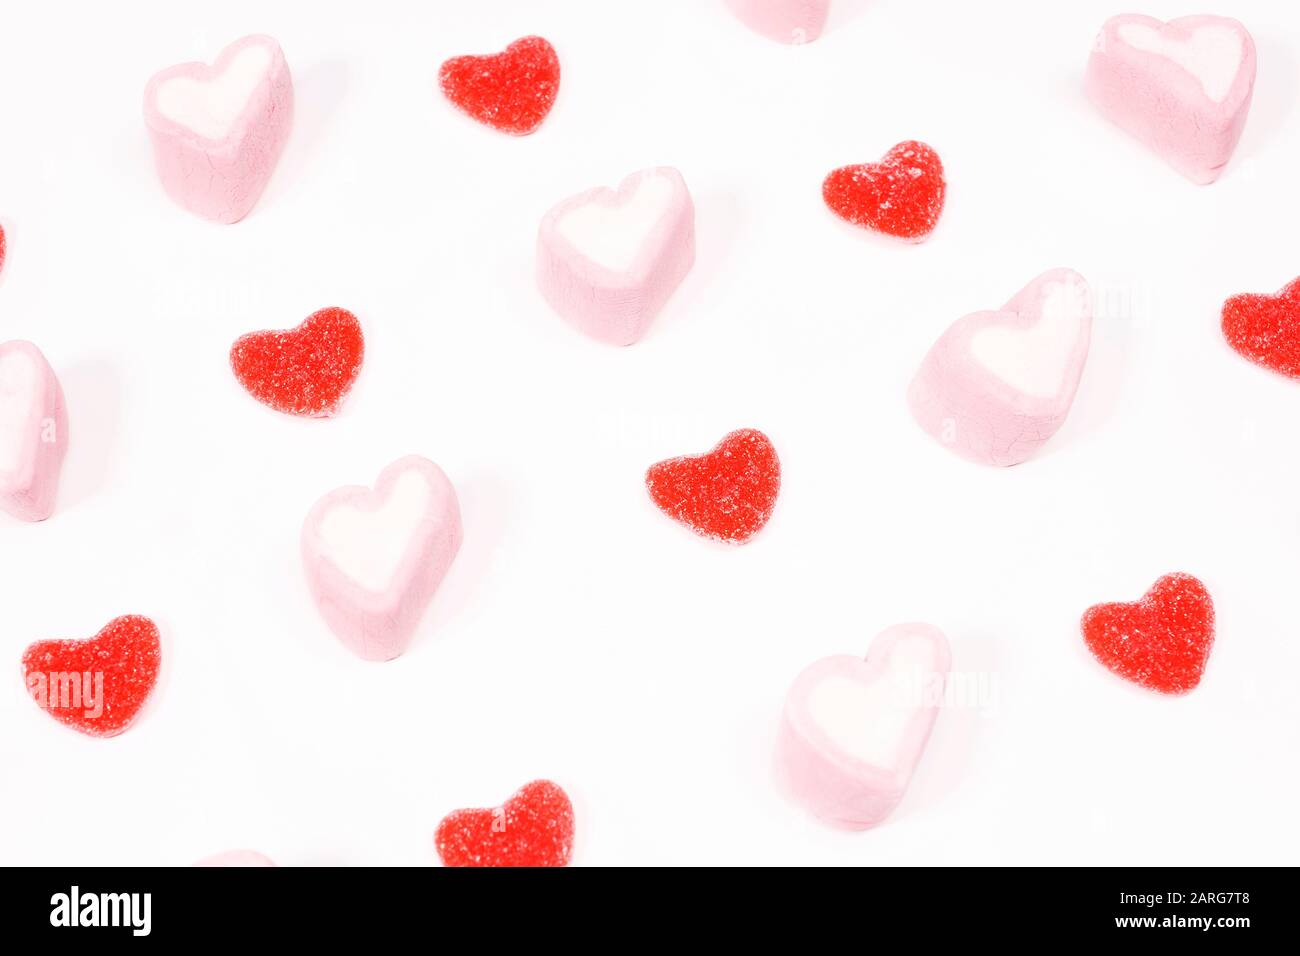 Golosinas con forma de corazón en un fondo blanco Foto de stock